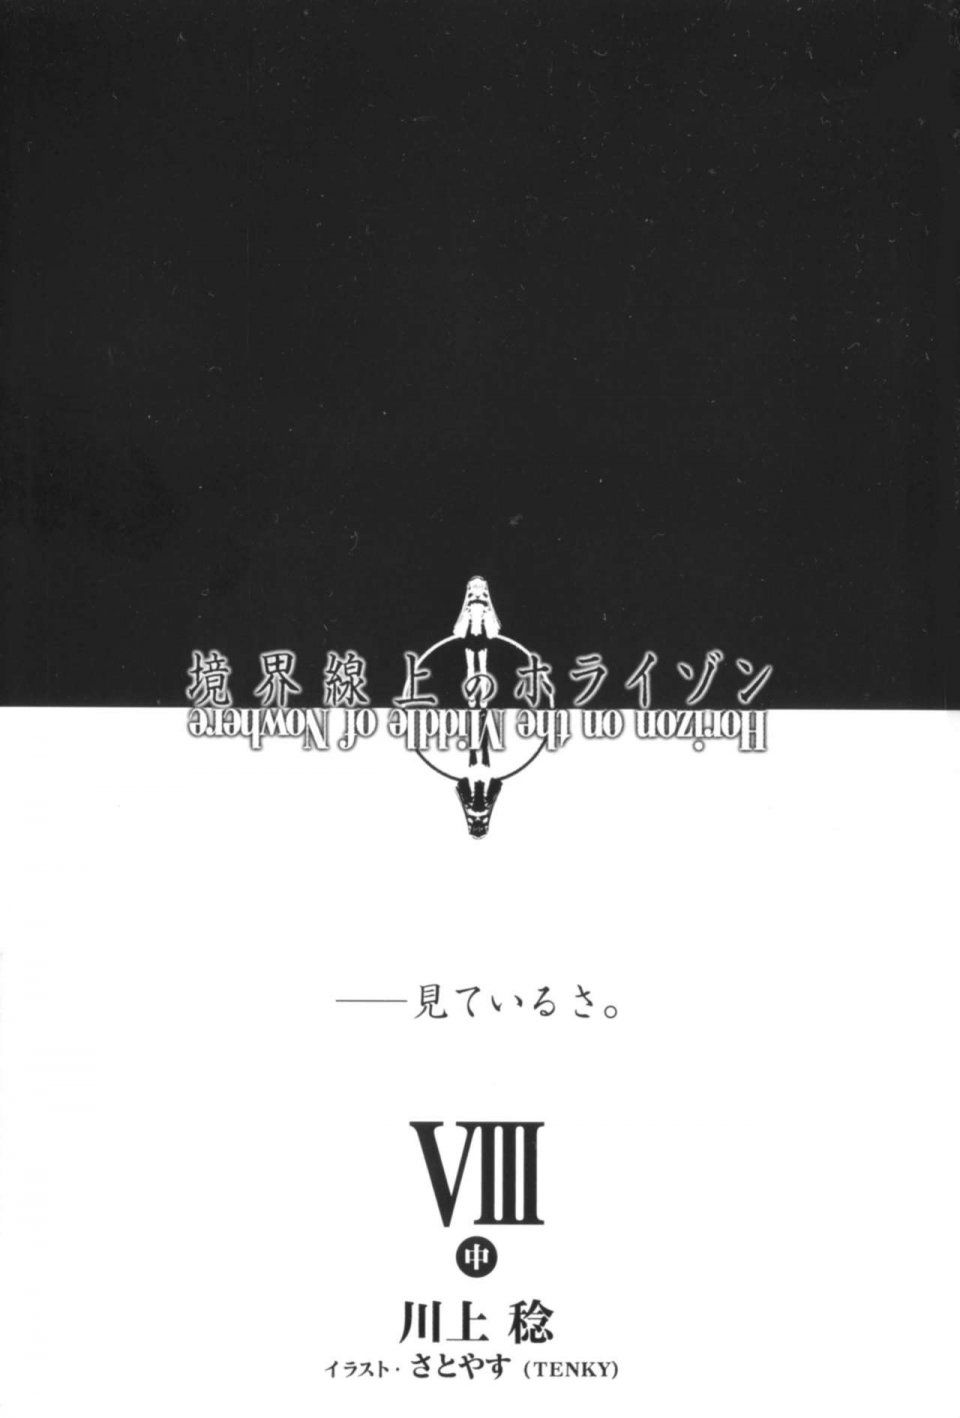 Kyoukai Senjou no Horizon LN Vol 20(8B) - Photo #8